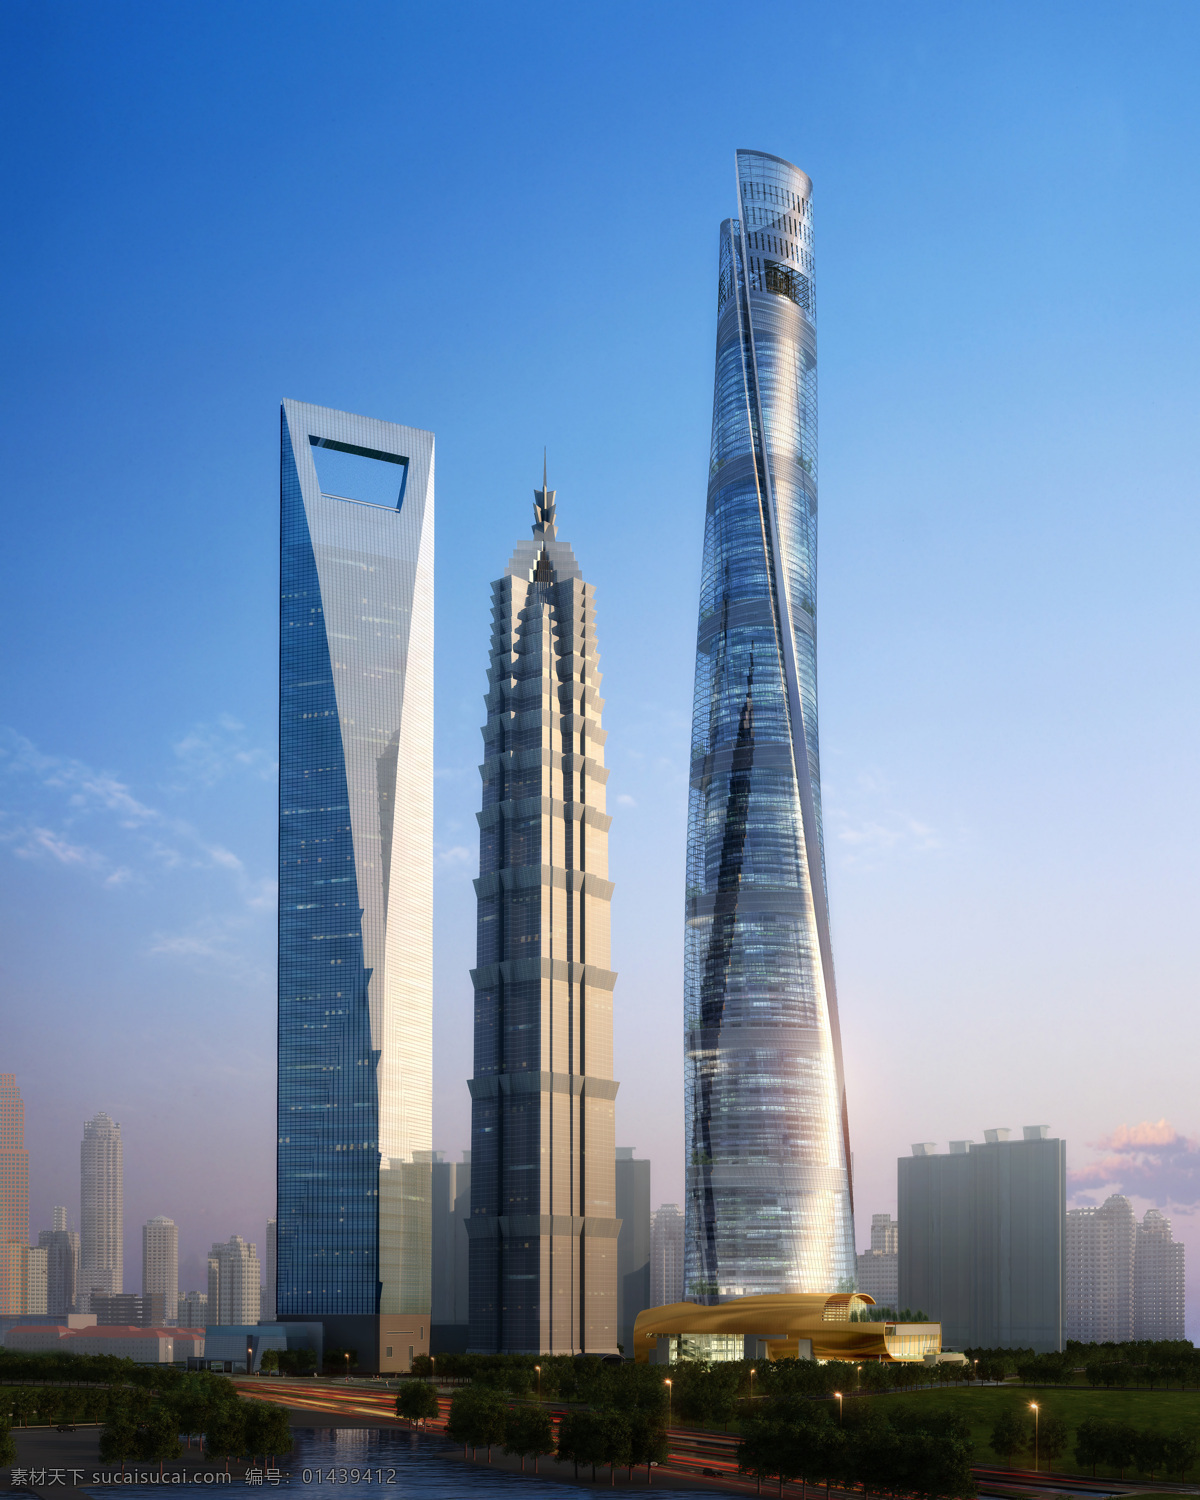 上海摩天大楼 上海浦东 摩天大楼 大都市 城市 陆家嘴 金荗大厦 环球金融中心 上海中心 效果图 建筑设计 环境设计